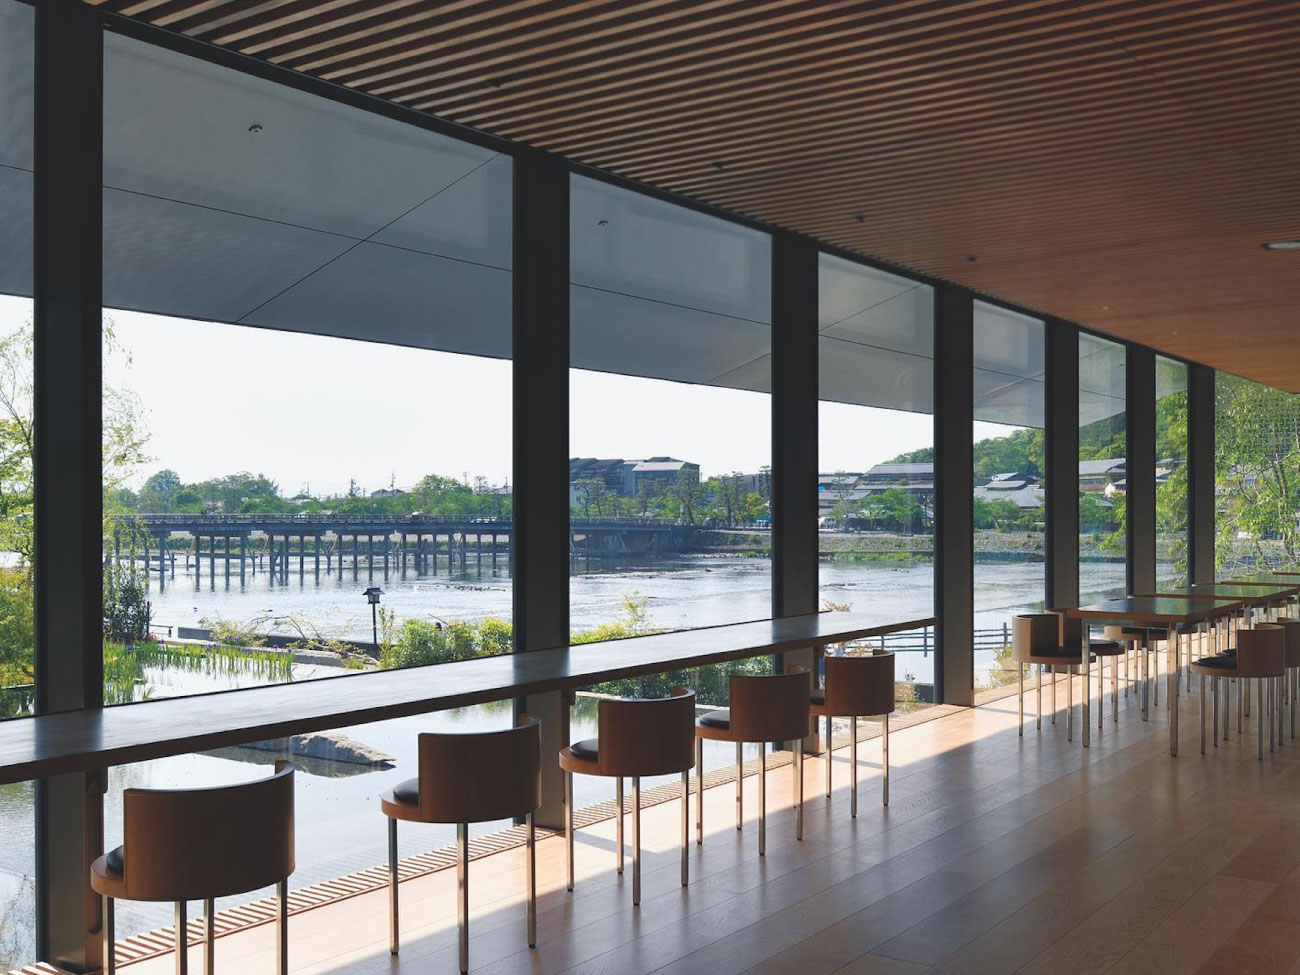 渡月橋が最も美しく見えるカフェ「パンとエスプレッソと福田美術館」を併設